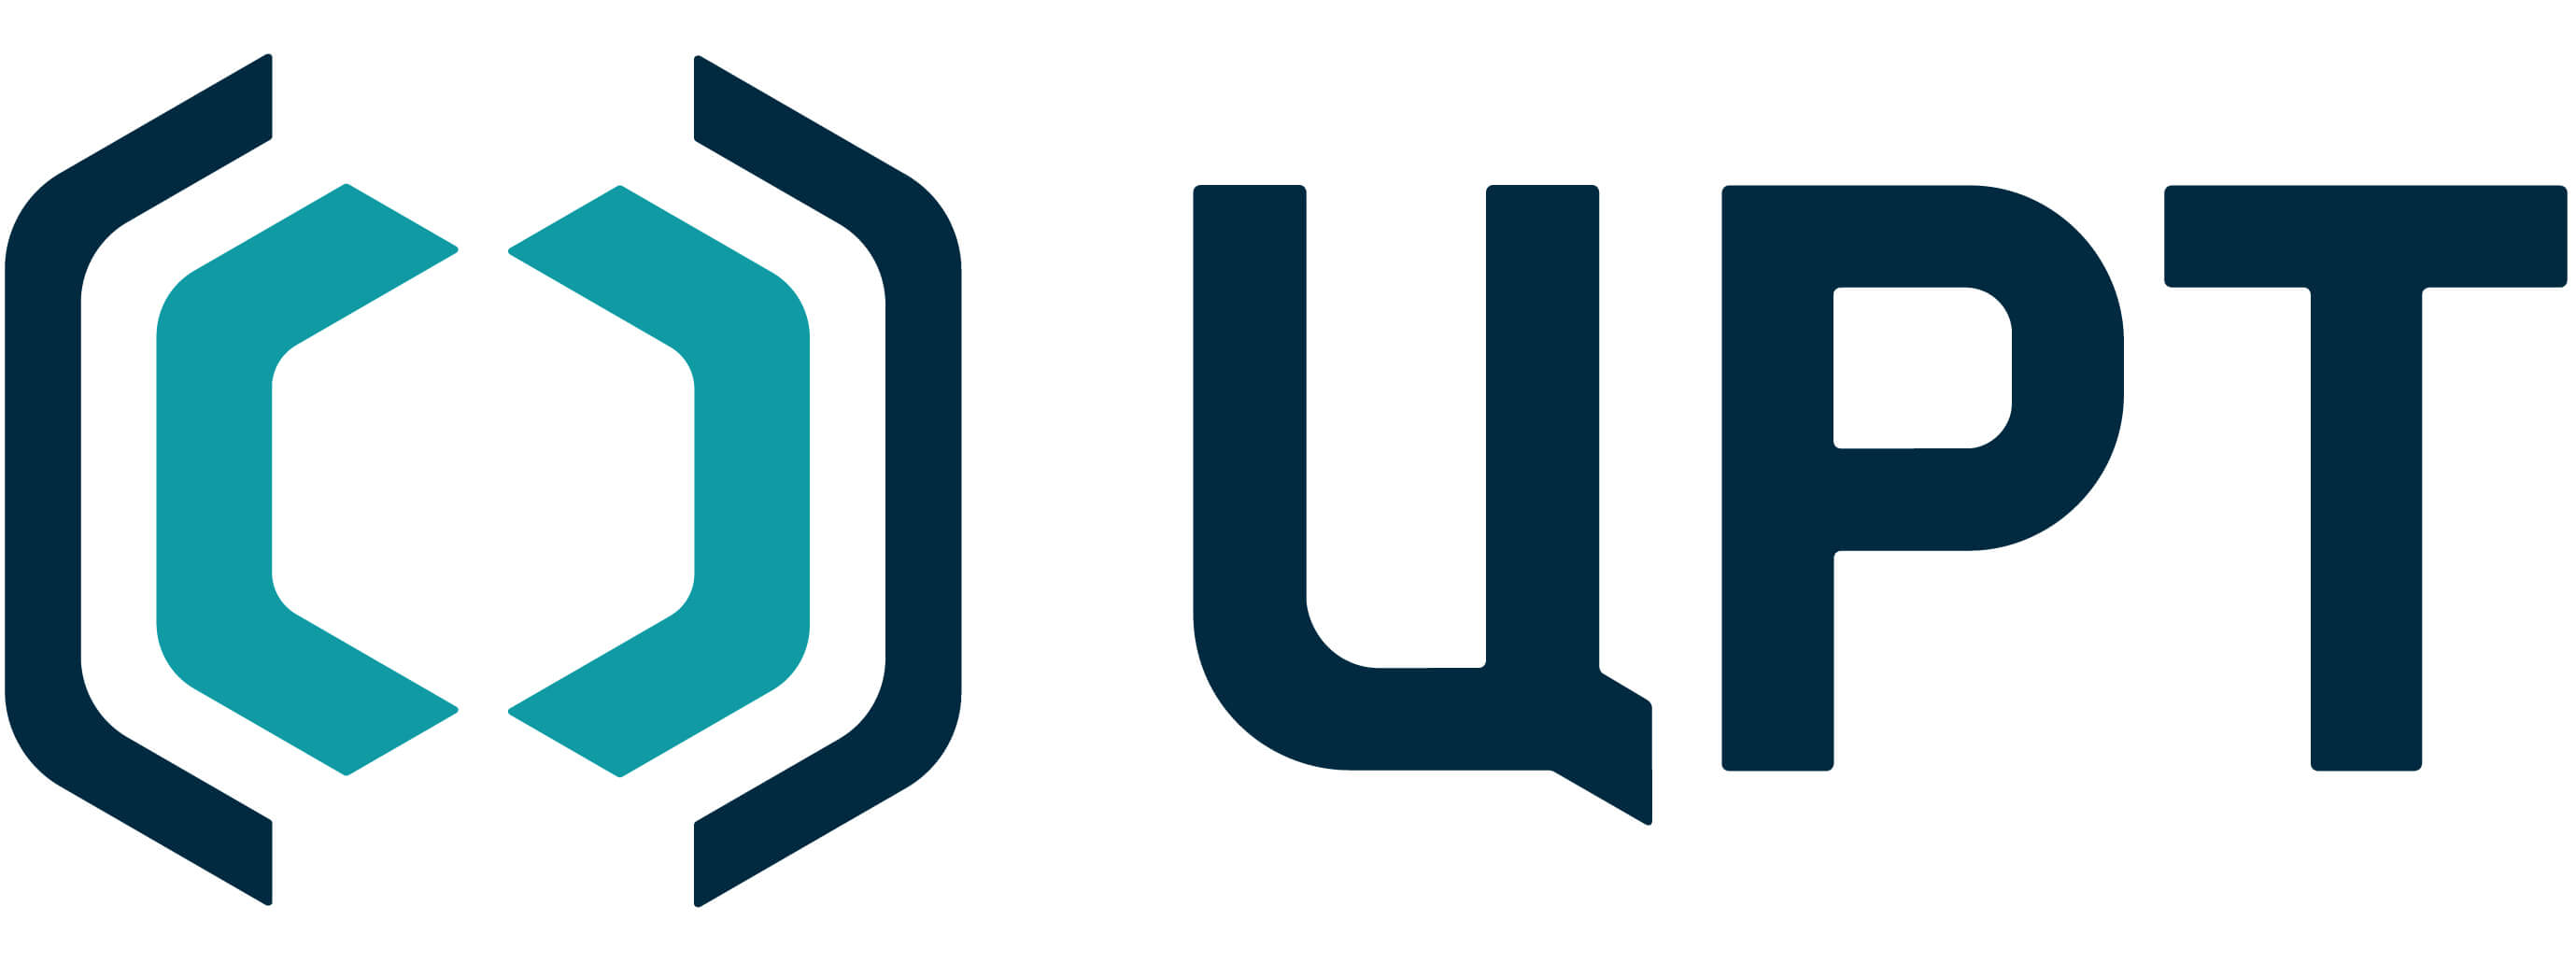 speechpro-logo